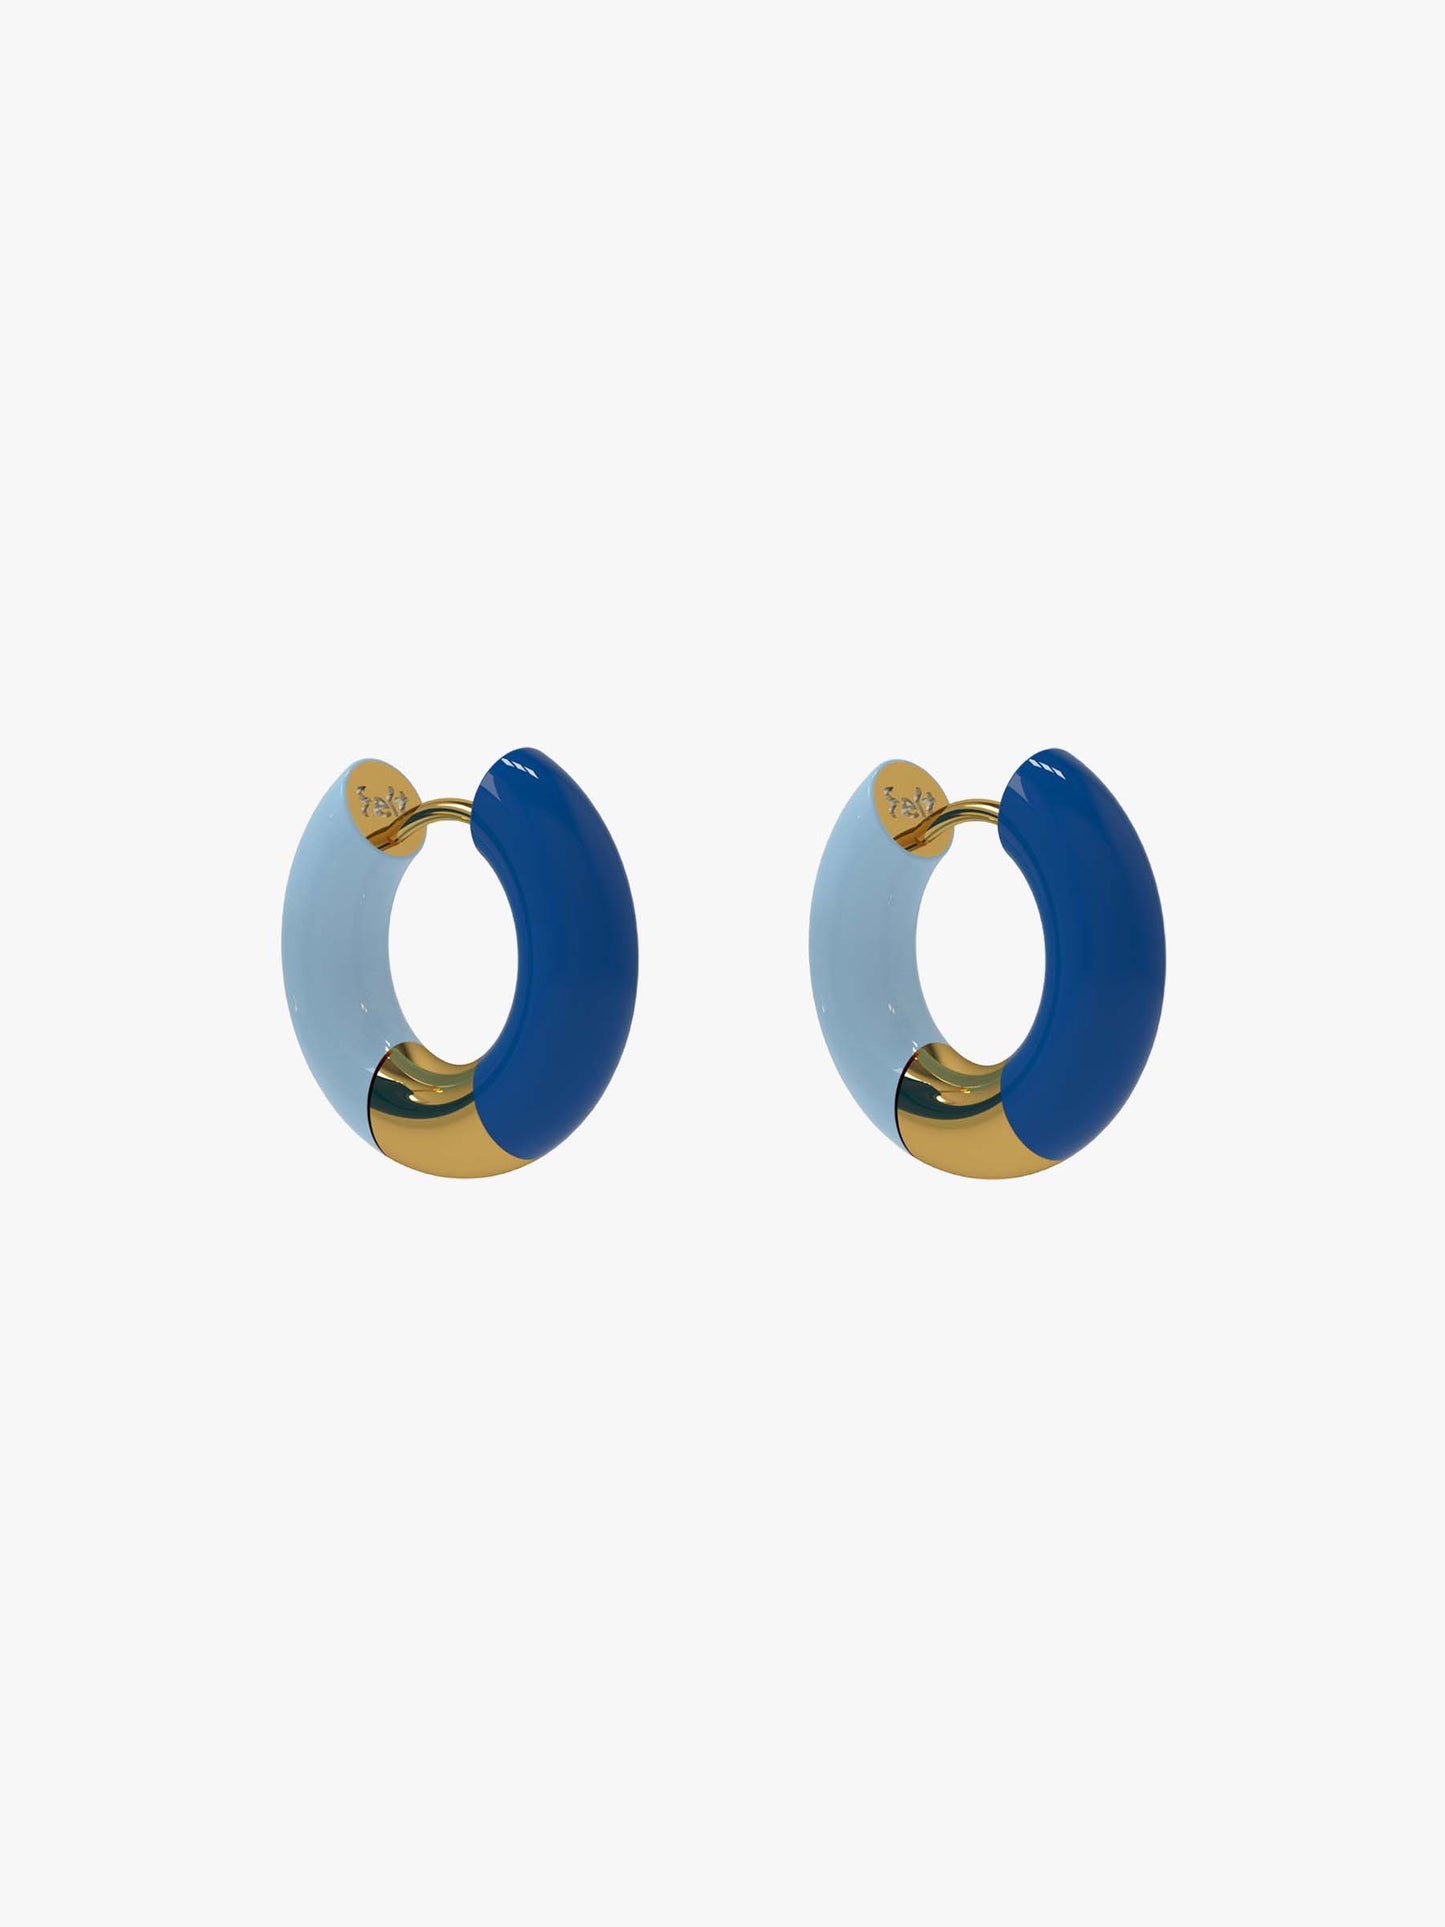 Pio blue earring (pair)